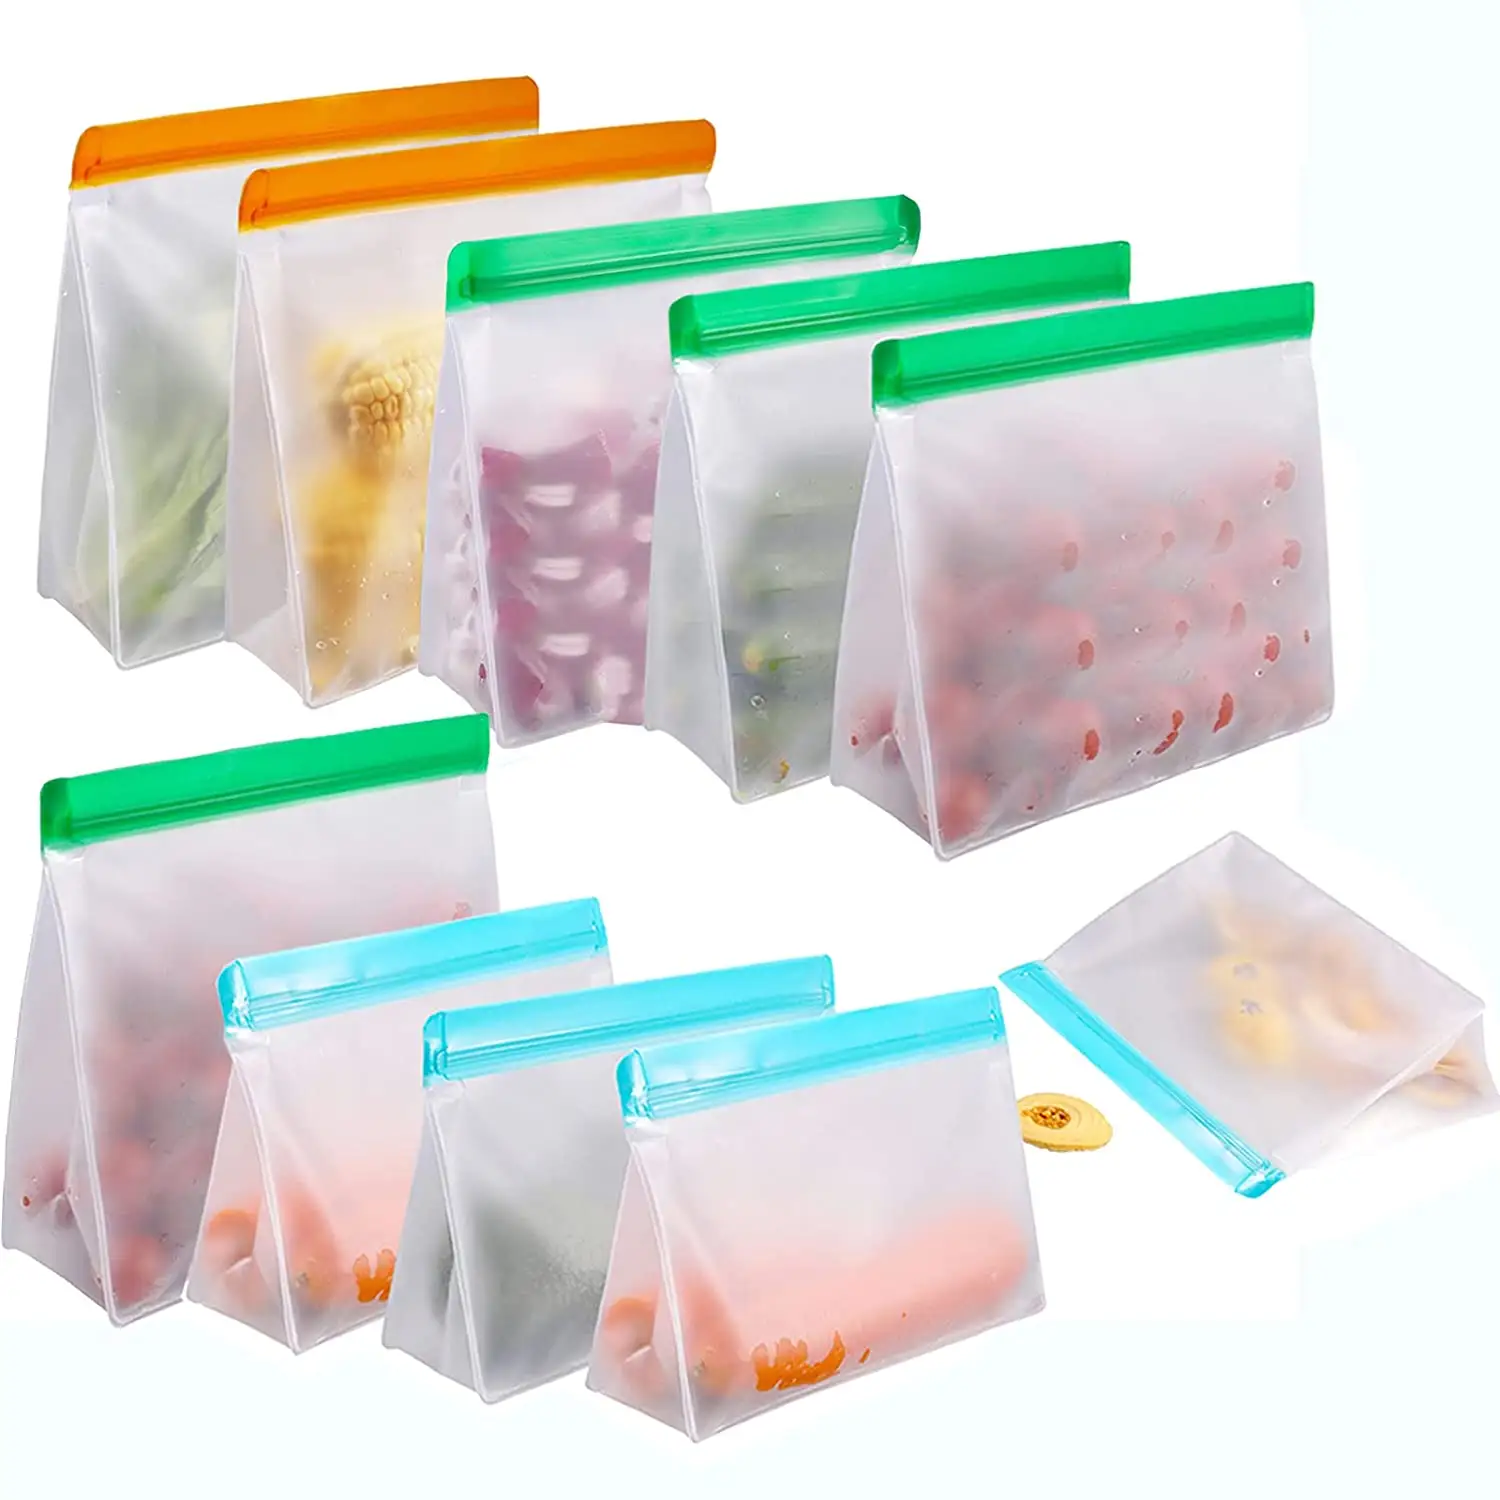 Reusable Freezer Bags Wholesale Customized Reusable Plastic Food Bags Leak Proof Freezer Storage Plastic Bags Sets